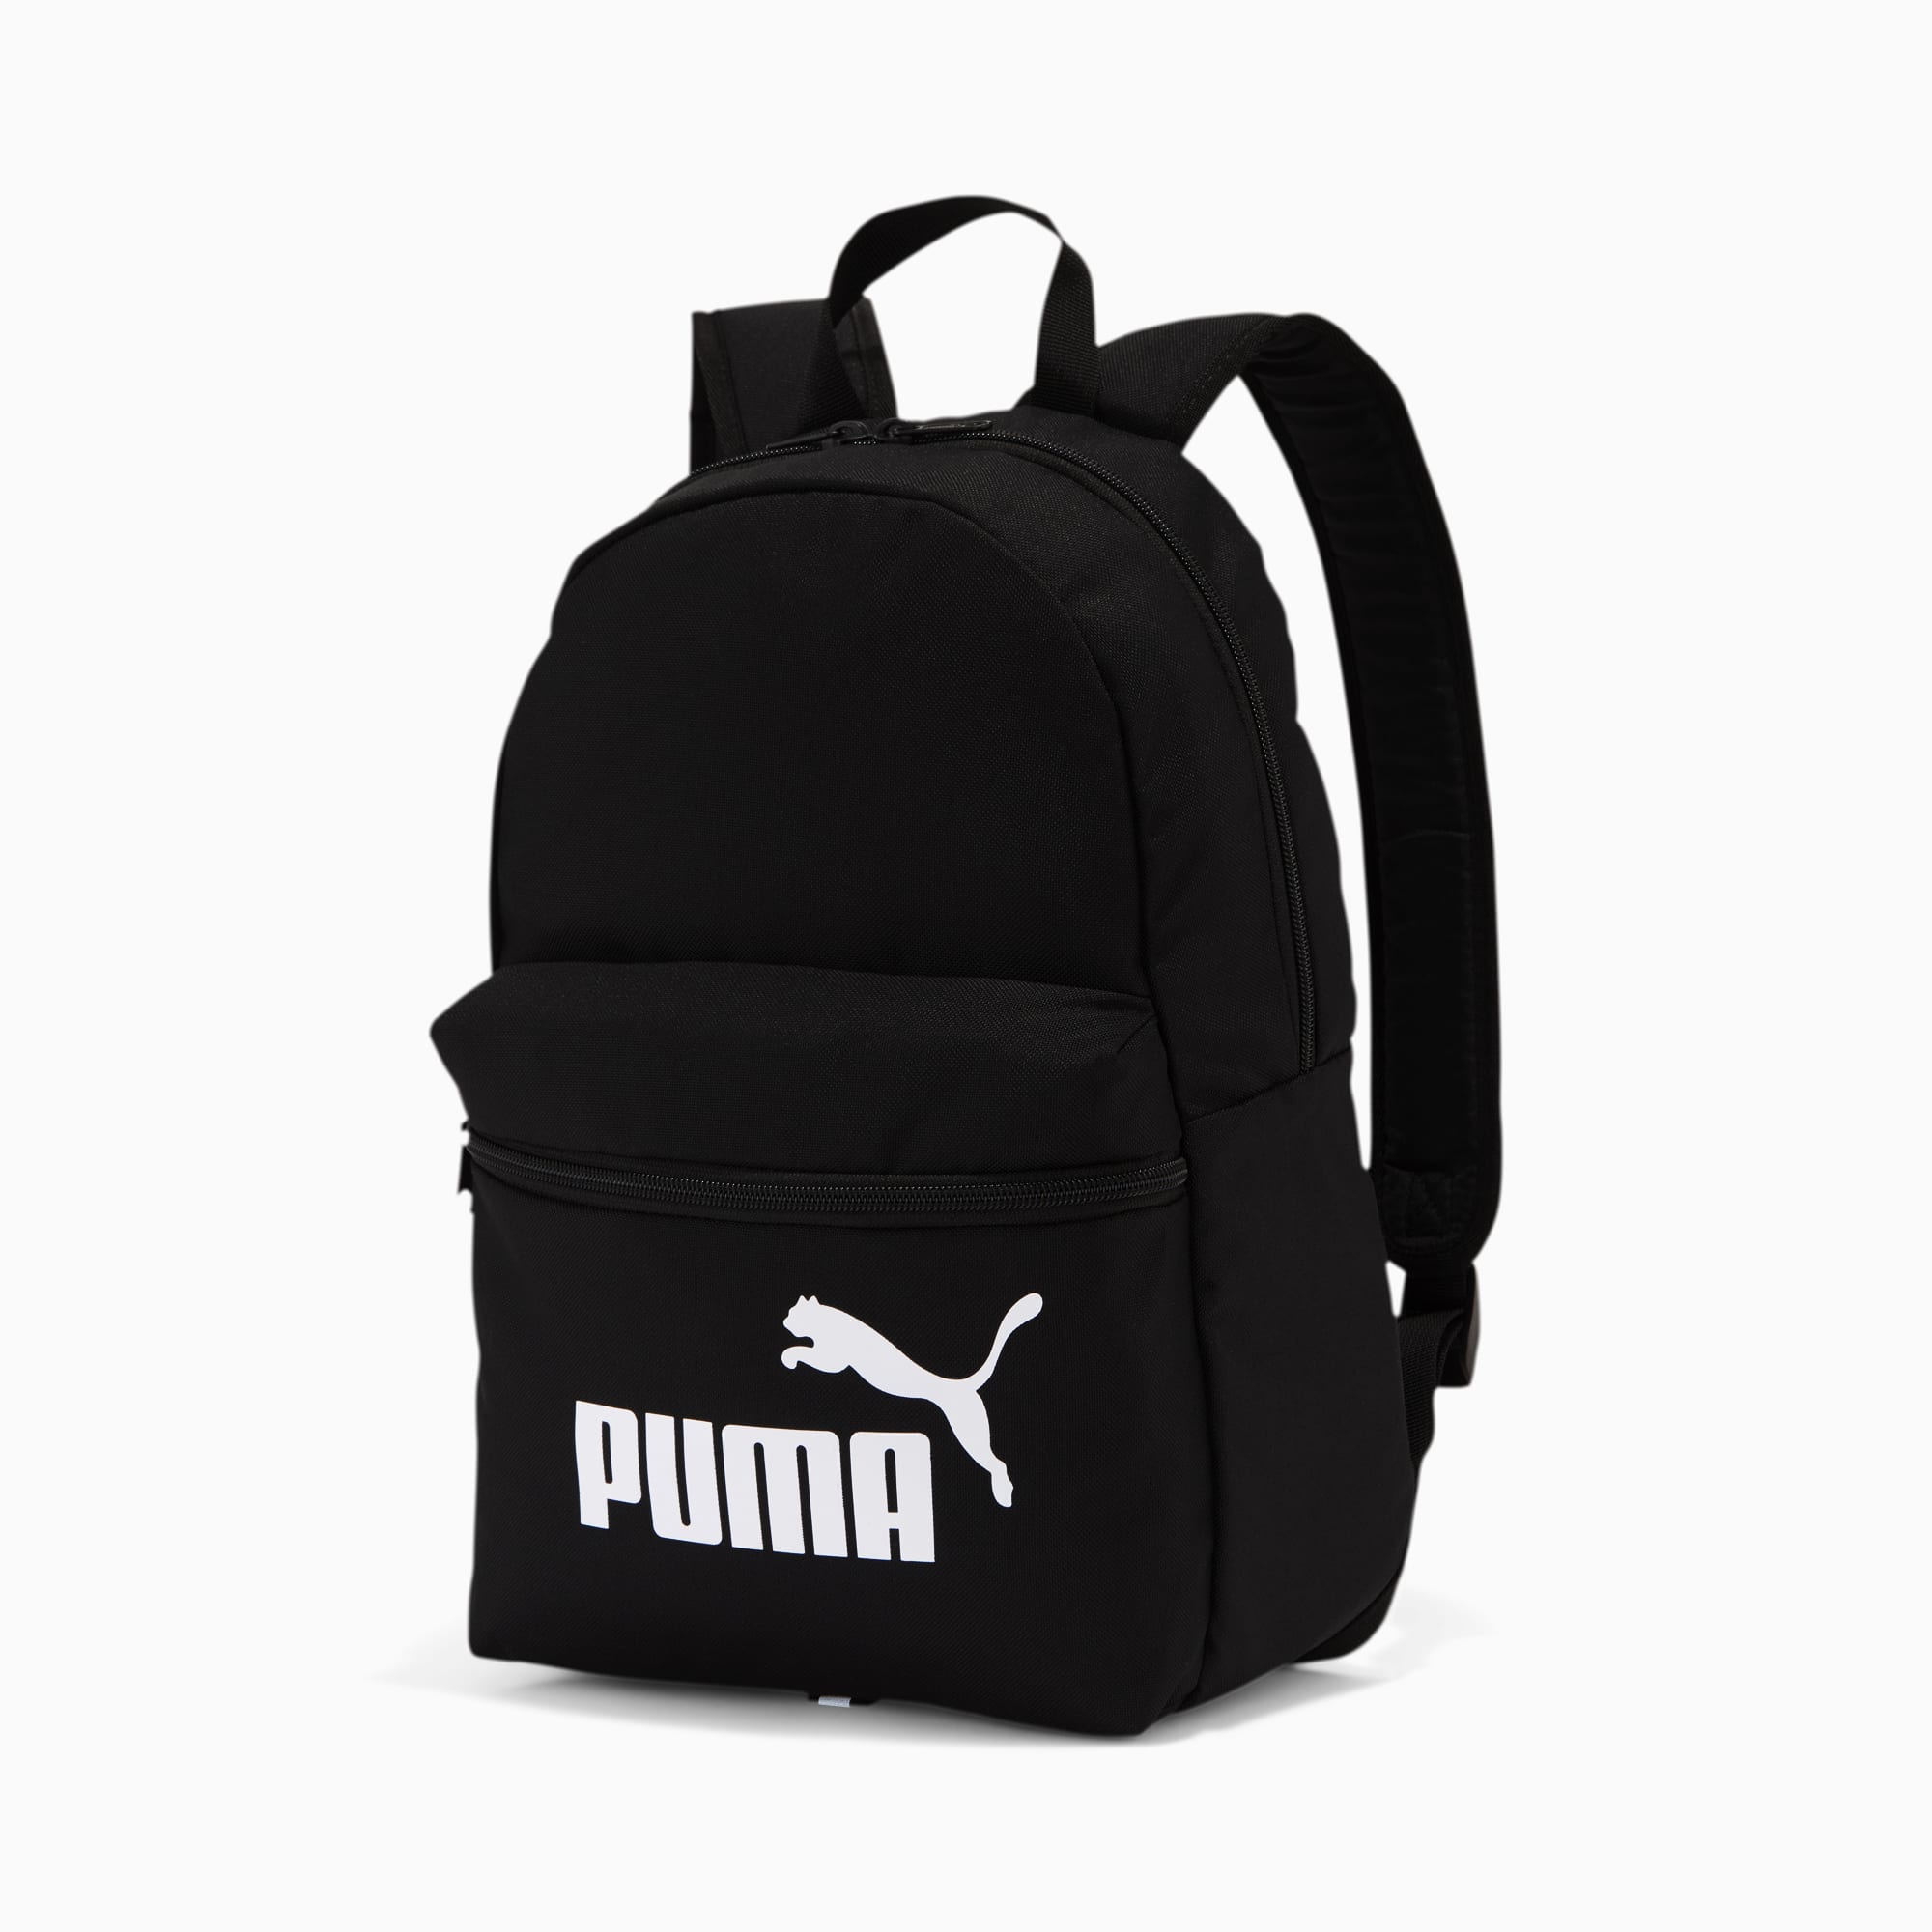 puma small bag